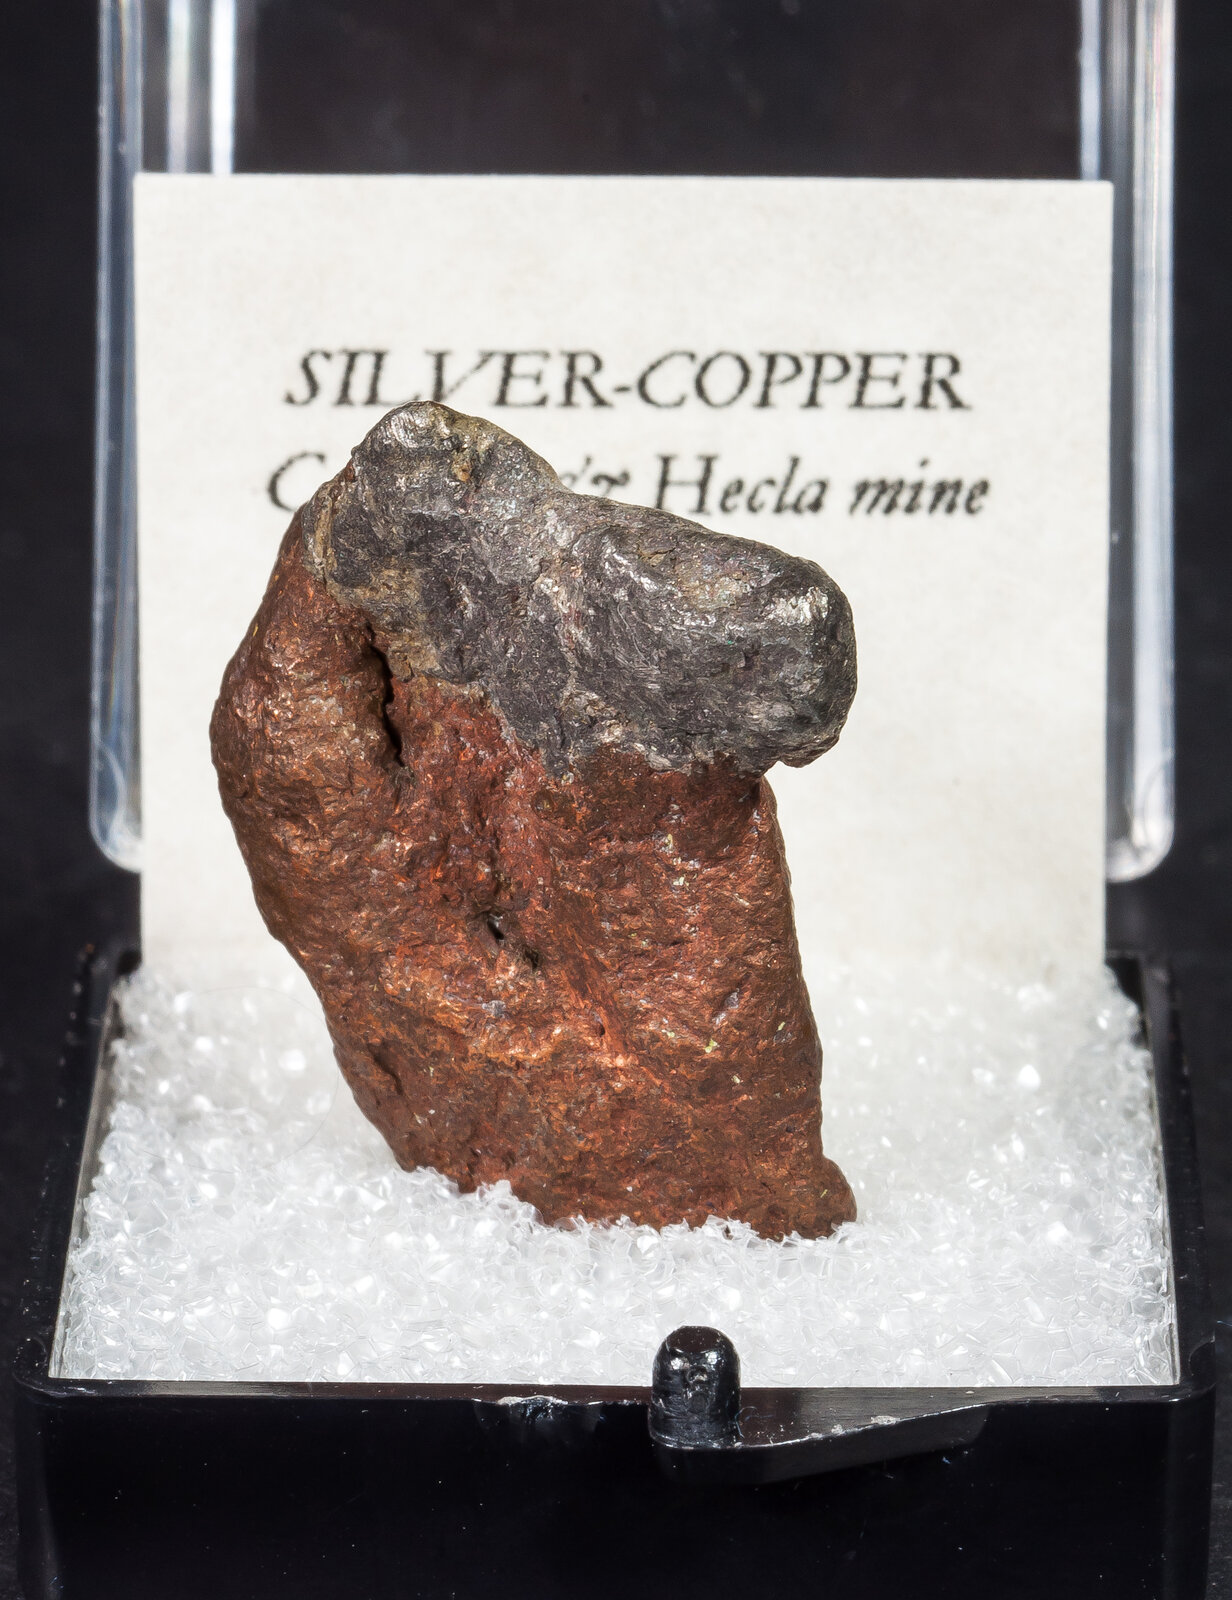 specimens/s_imagesAN1/Silver-Copper-TQ6AN1f1.jpg